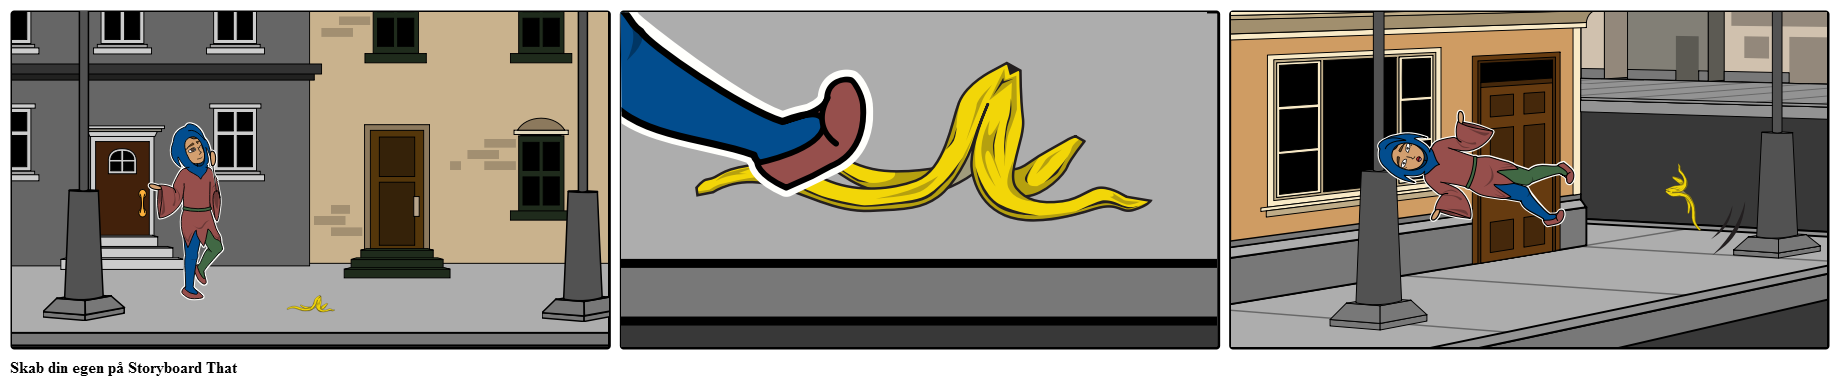 Jester glider på bananskræl